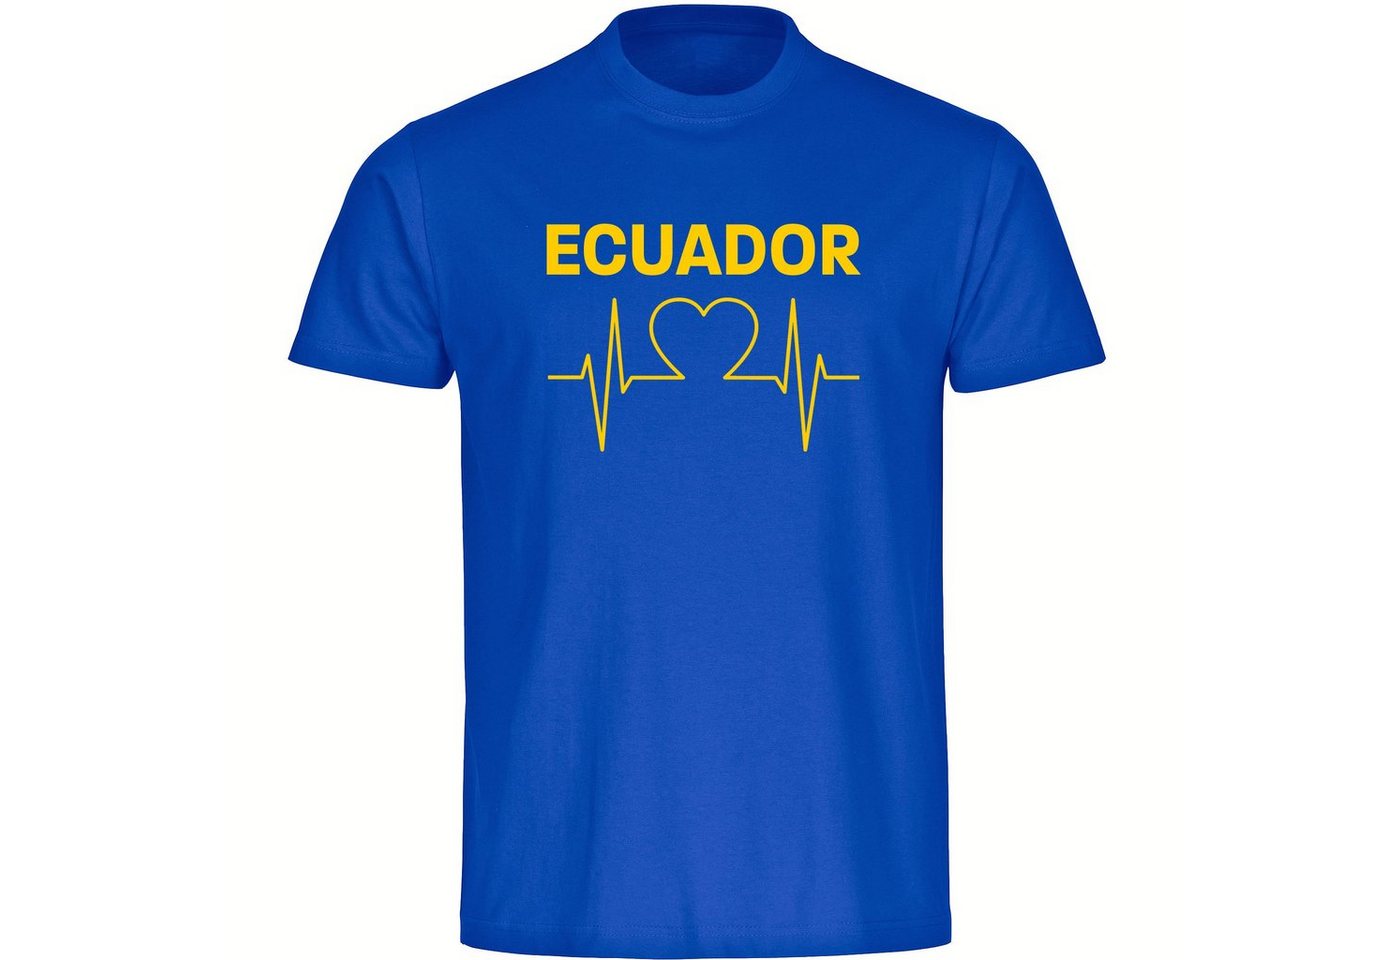 multifanshop T-Shirt Herren Ecuador - Herzschlag - Männer von multifanshop